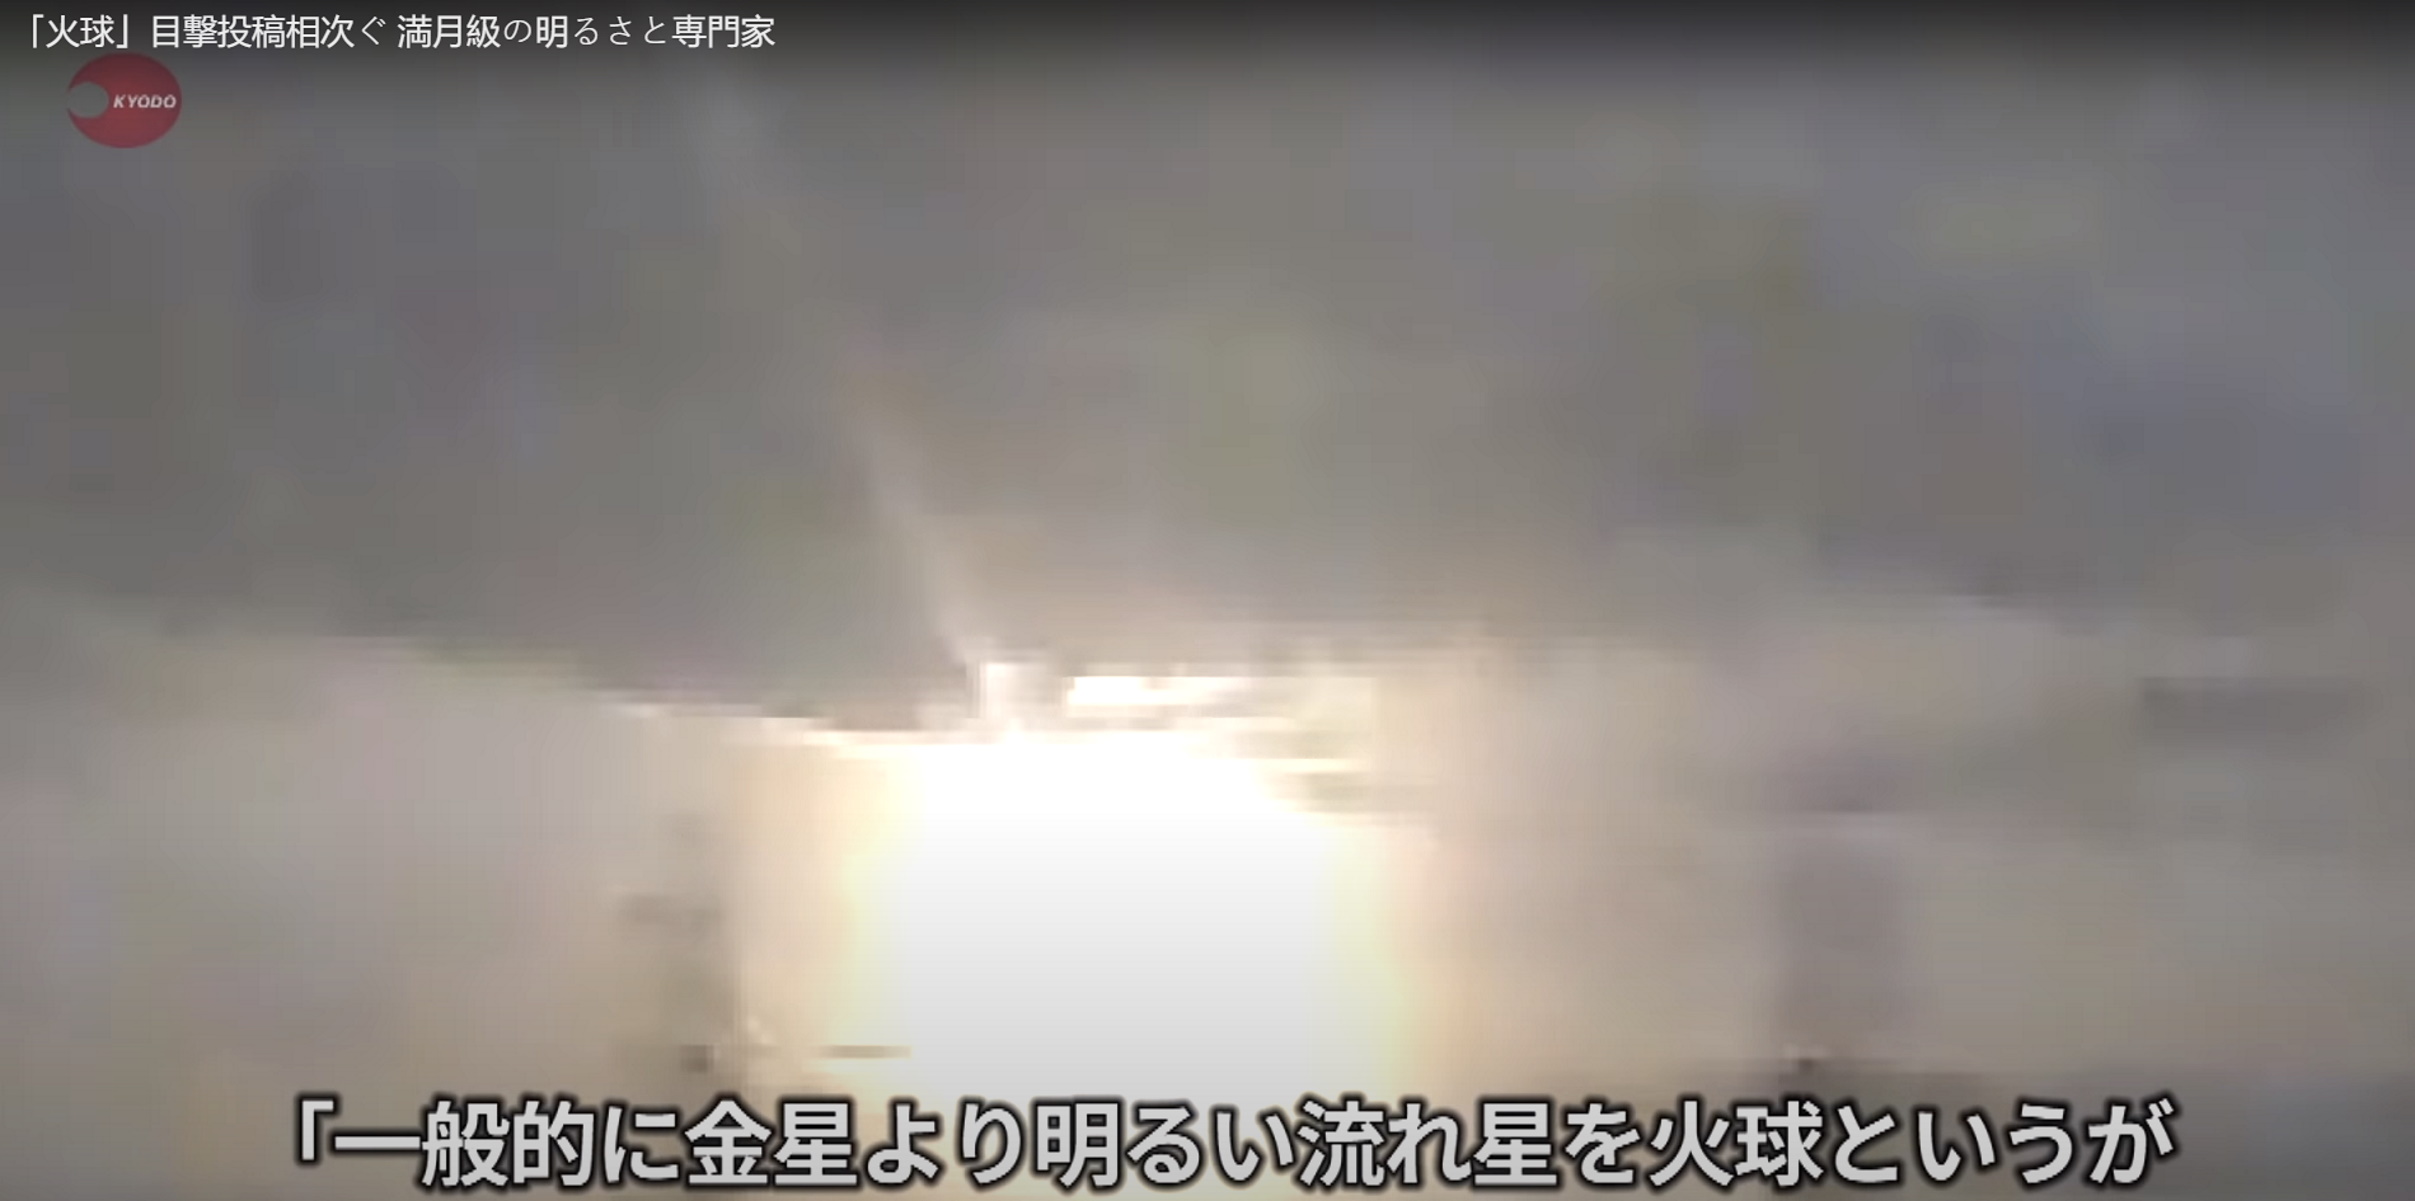 Τεράστια πύρινη σφαίρα πάνω από την Ιαπωνία! (video)